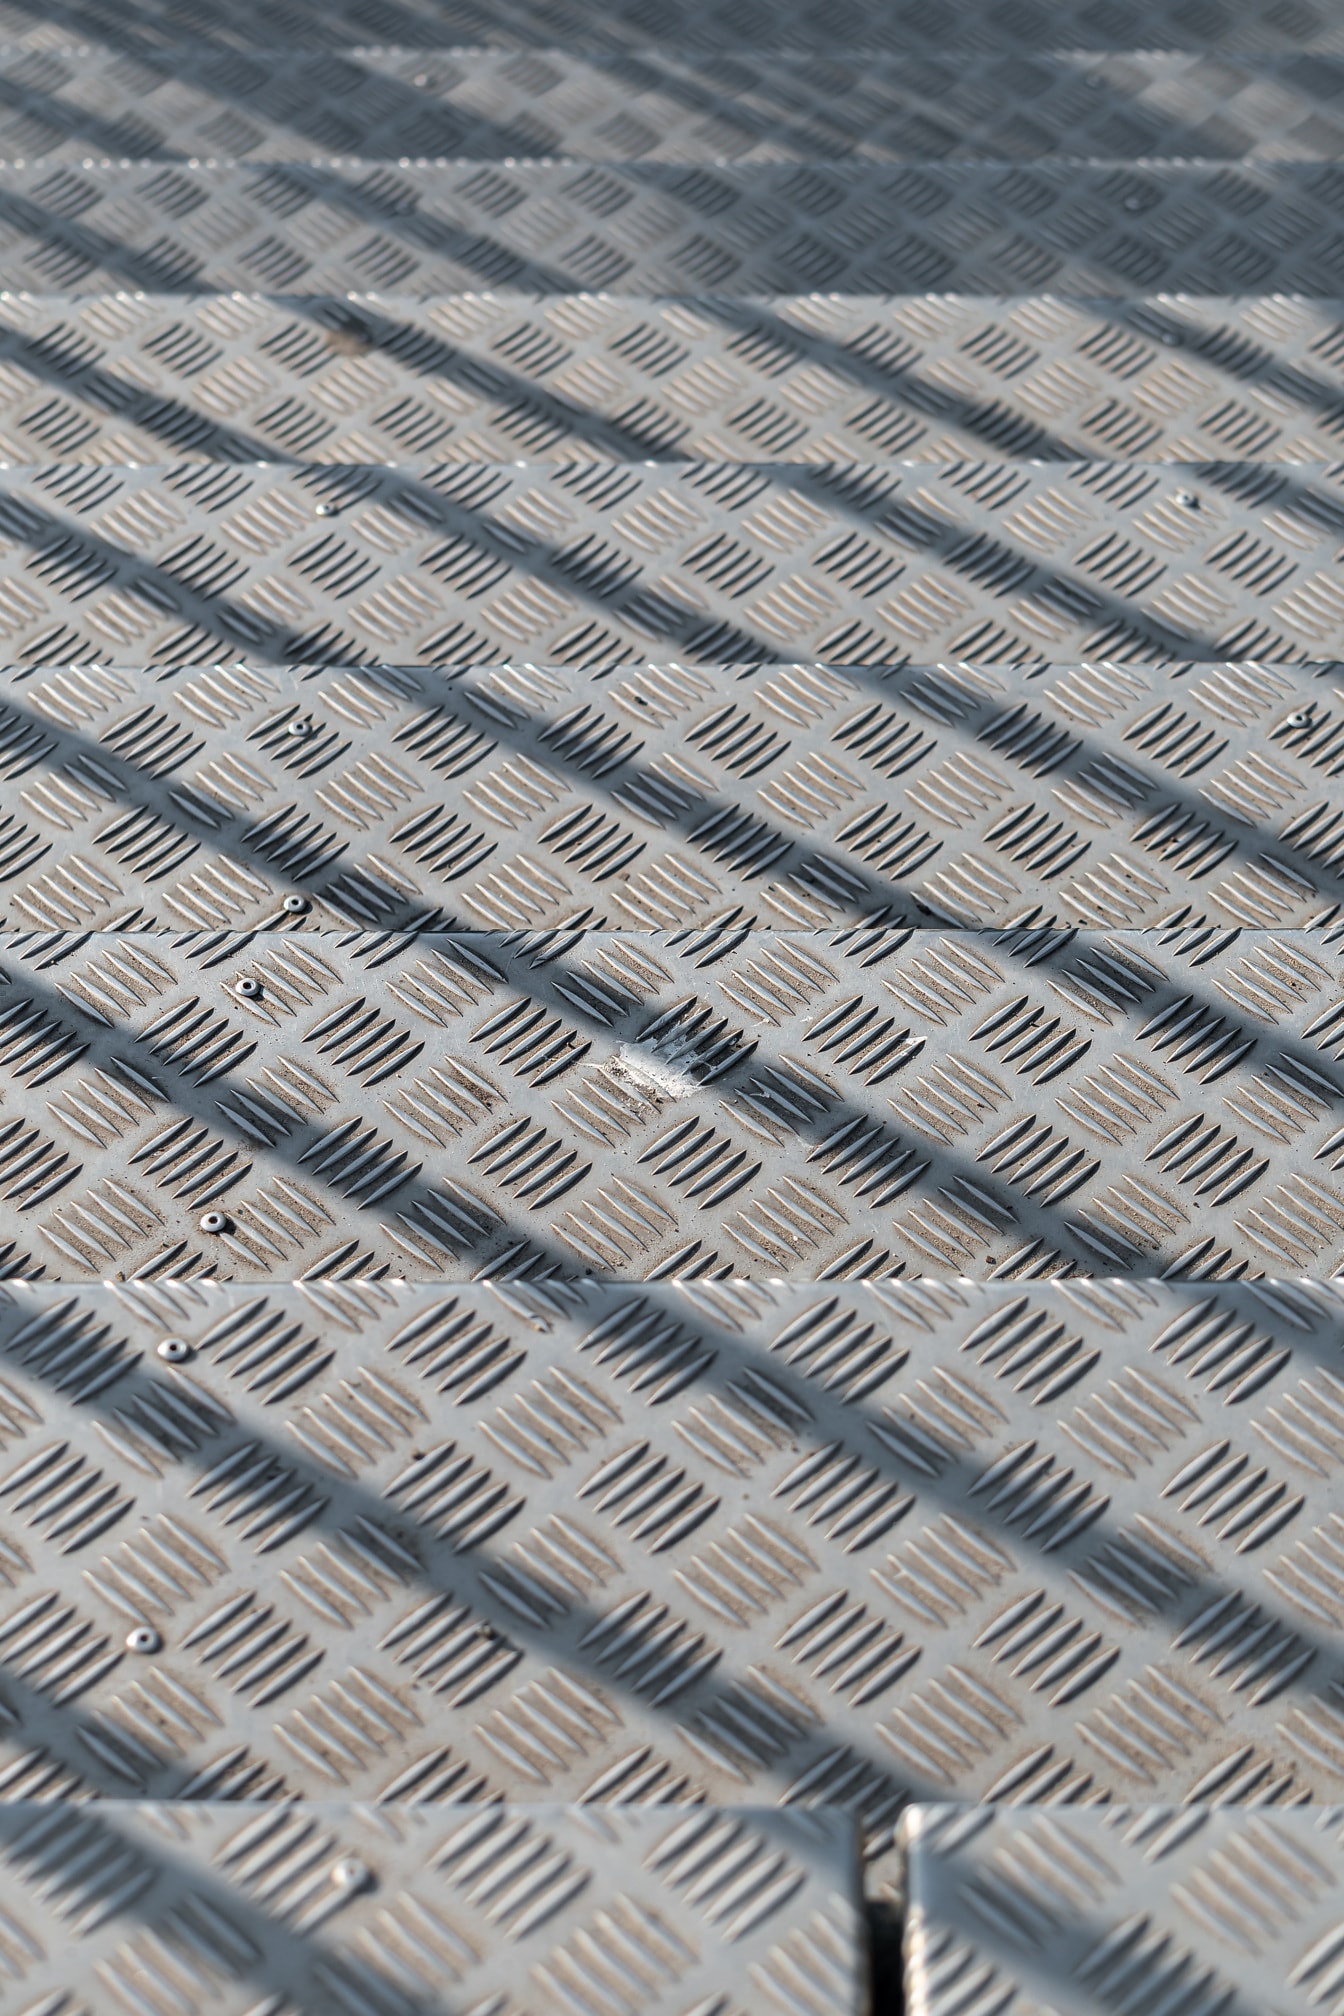 Tekstur close-up tangga aluminium dalam bayangan